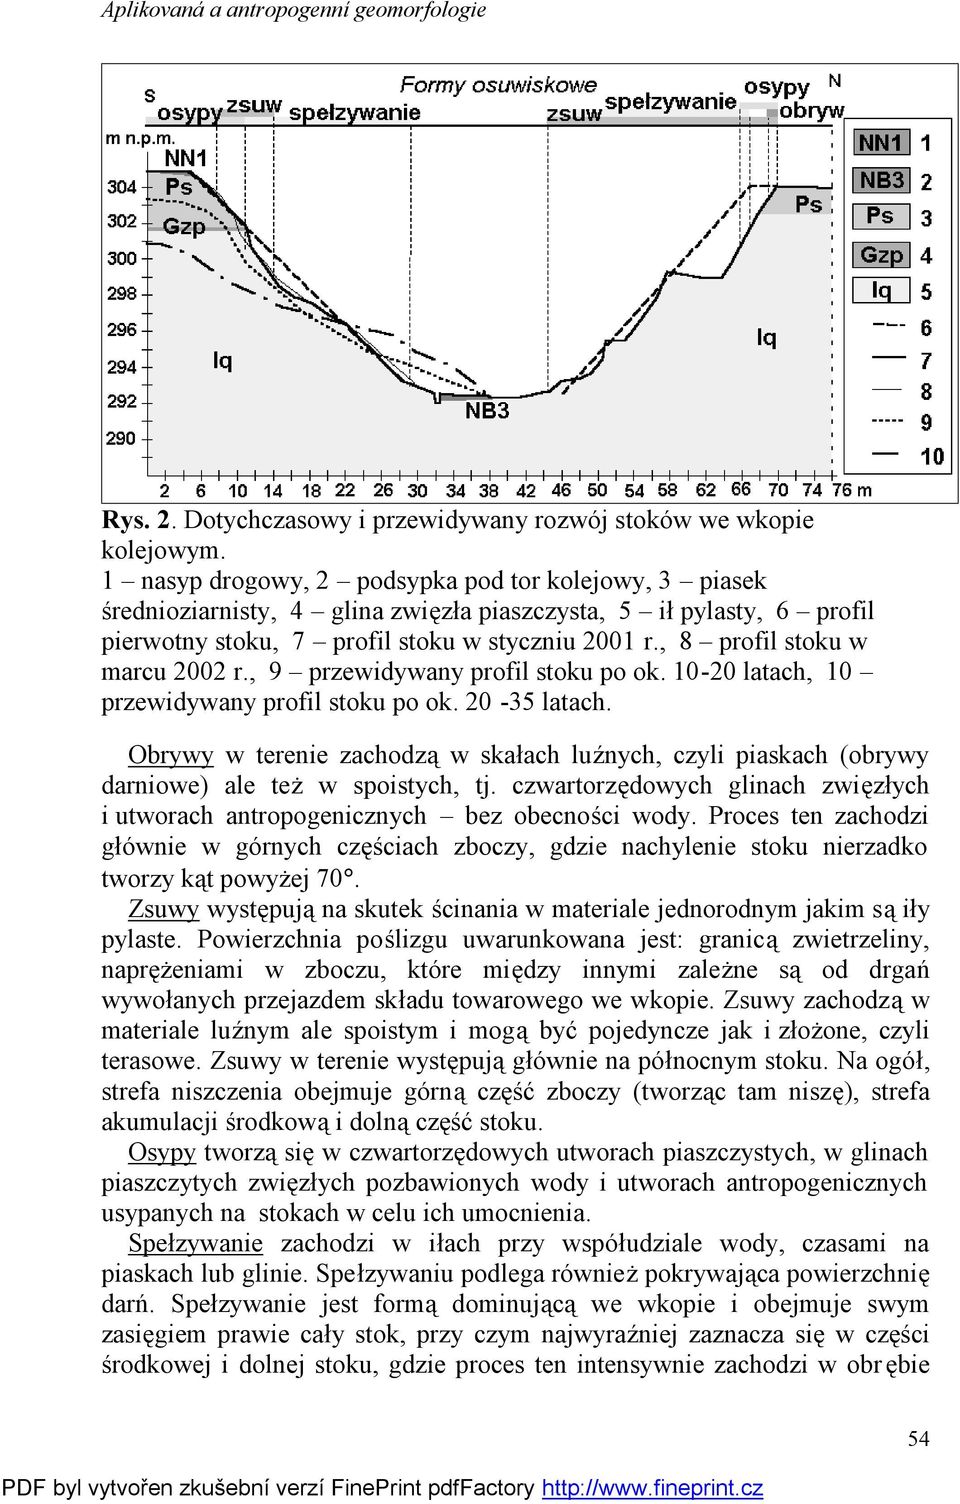 , 8 profil stoku w marcu 2002 r., 9 przewidywany profil stoku po ok. 10-20 latach, 10 przewidywany profil stoku po ok. 20-35 latach.